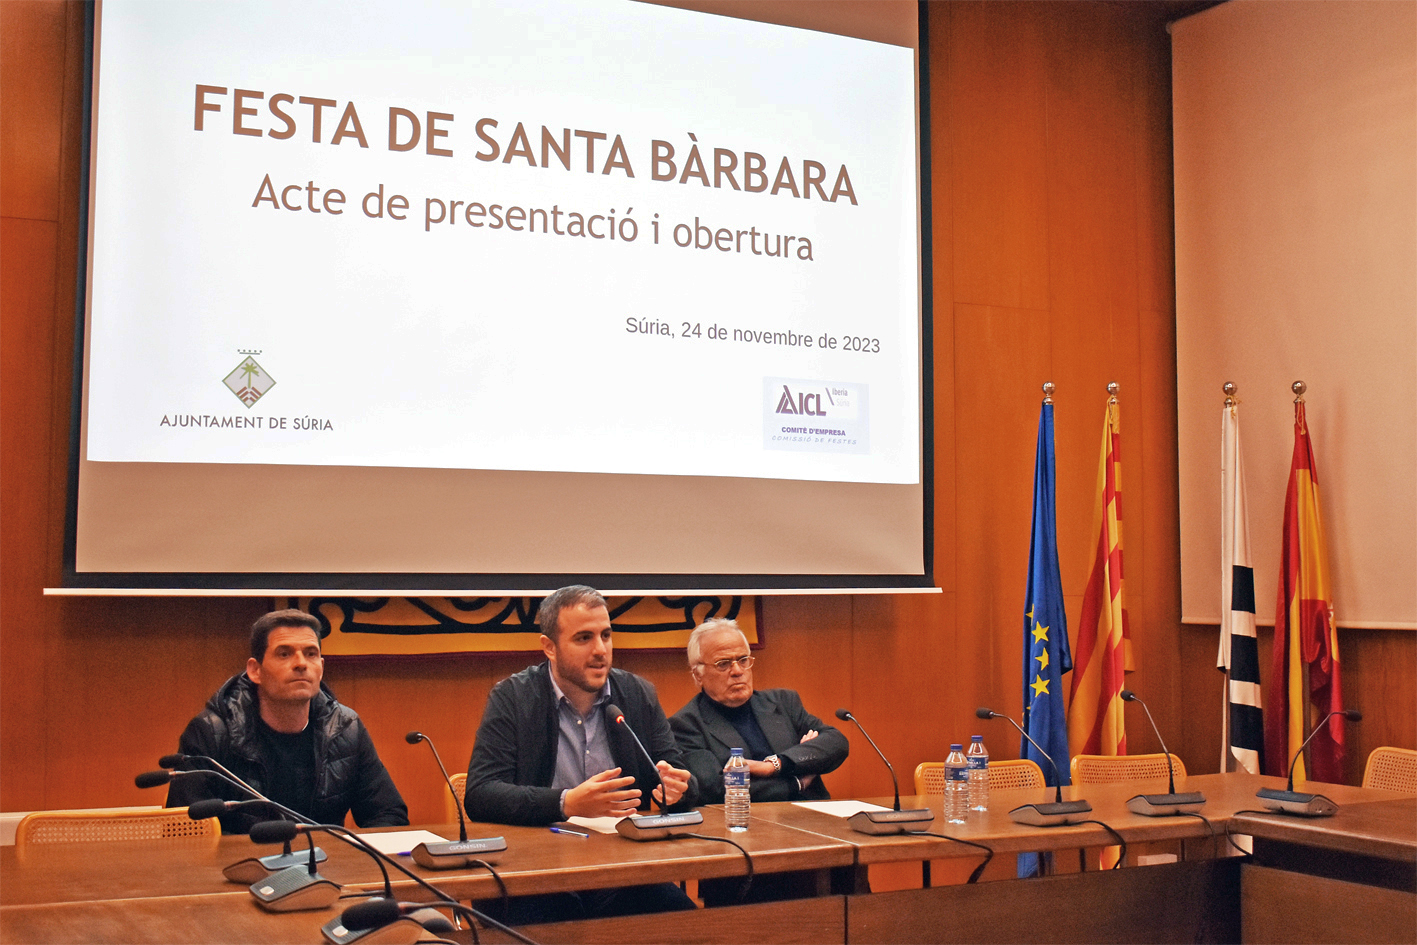 L'alcalde Albert Coberó parla durant l'acte d'obertura de la Festa de Santa Bàrbara, al costat del president del comitè d'empresa d'ICL Súria, David Sibila, i del ponent d'enguany, Demetri Domínguez.